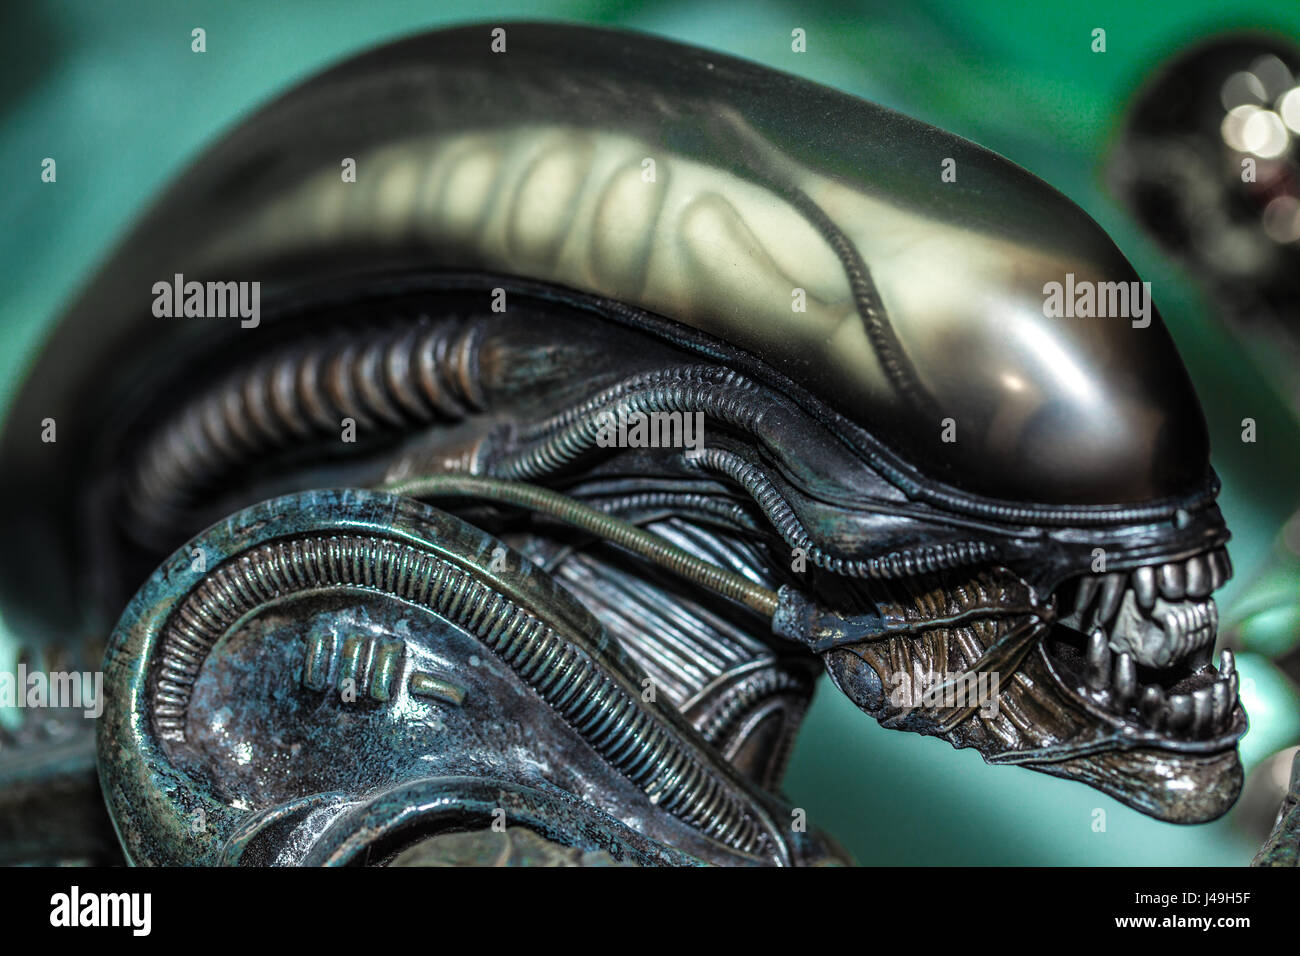 Alien movie figure Stock Photo